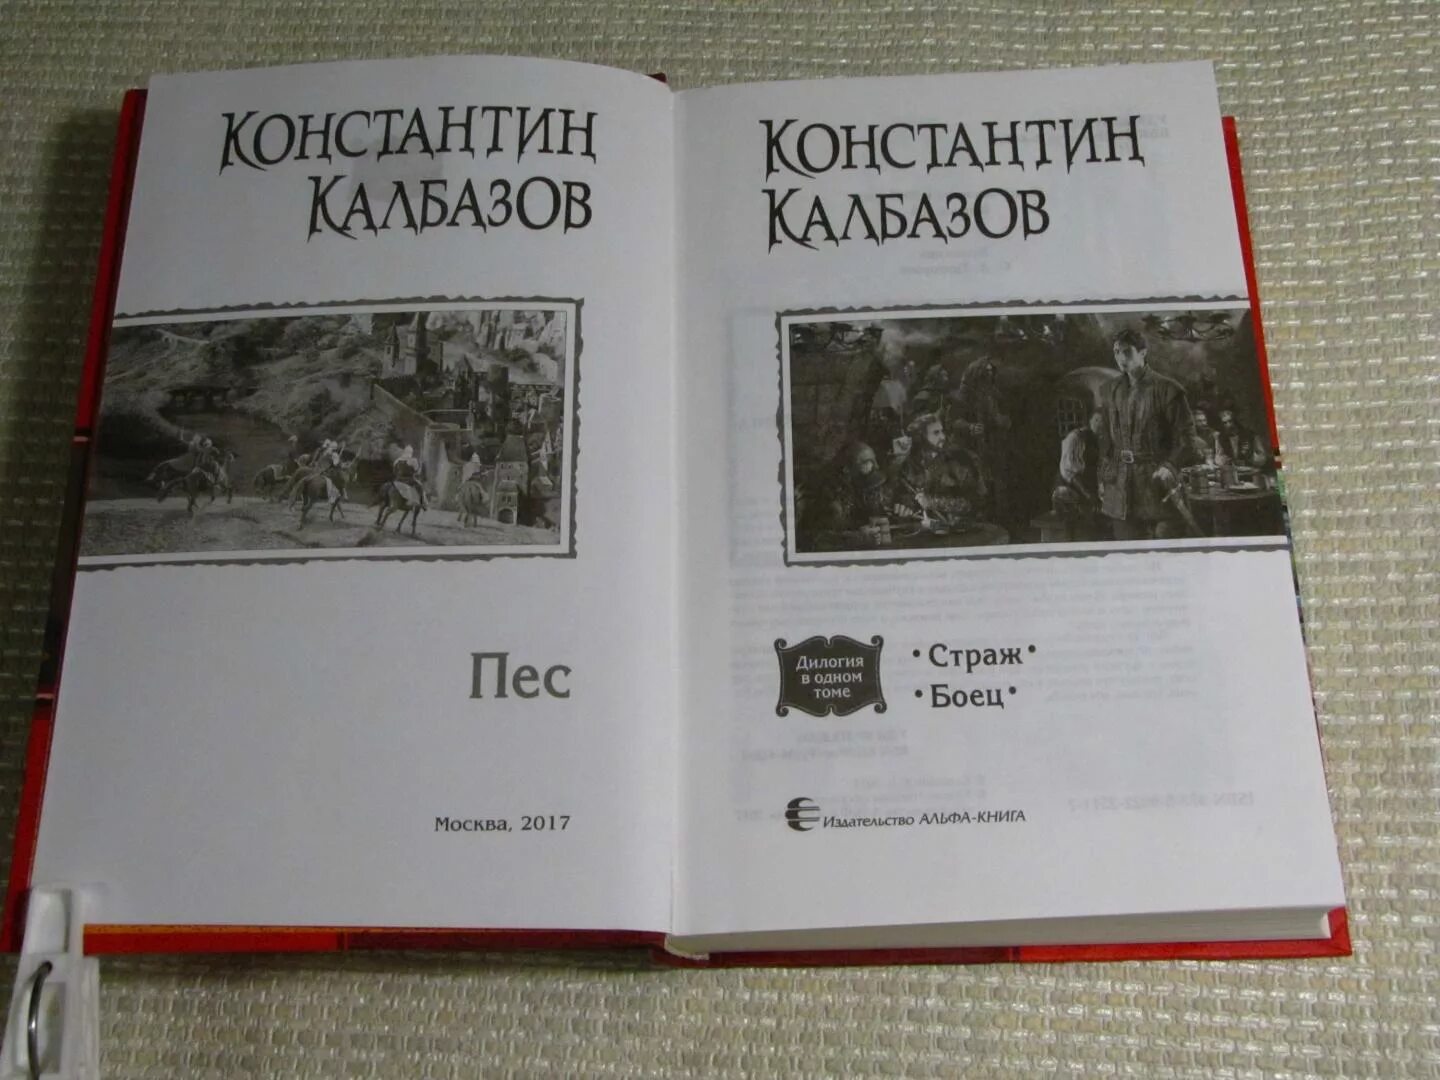 Книги константина колбазова. Иллюстрации к книгам Константина Колбазова. Калбазов пес все книги.